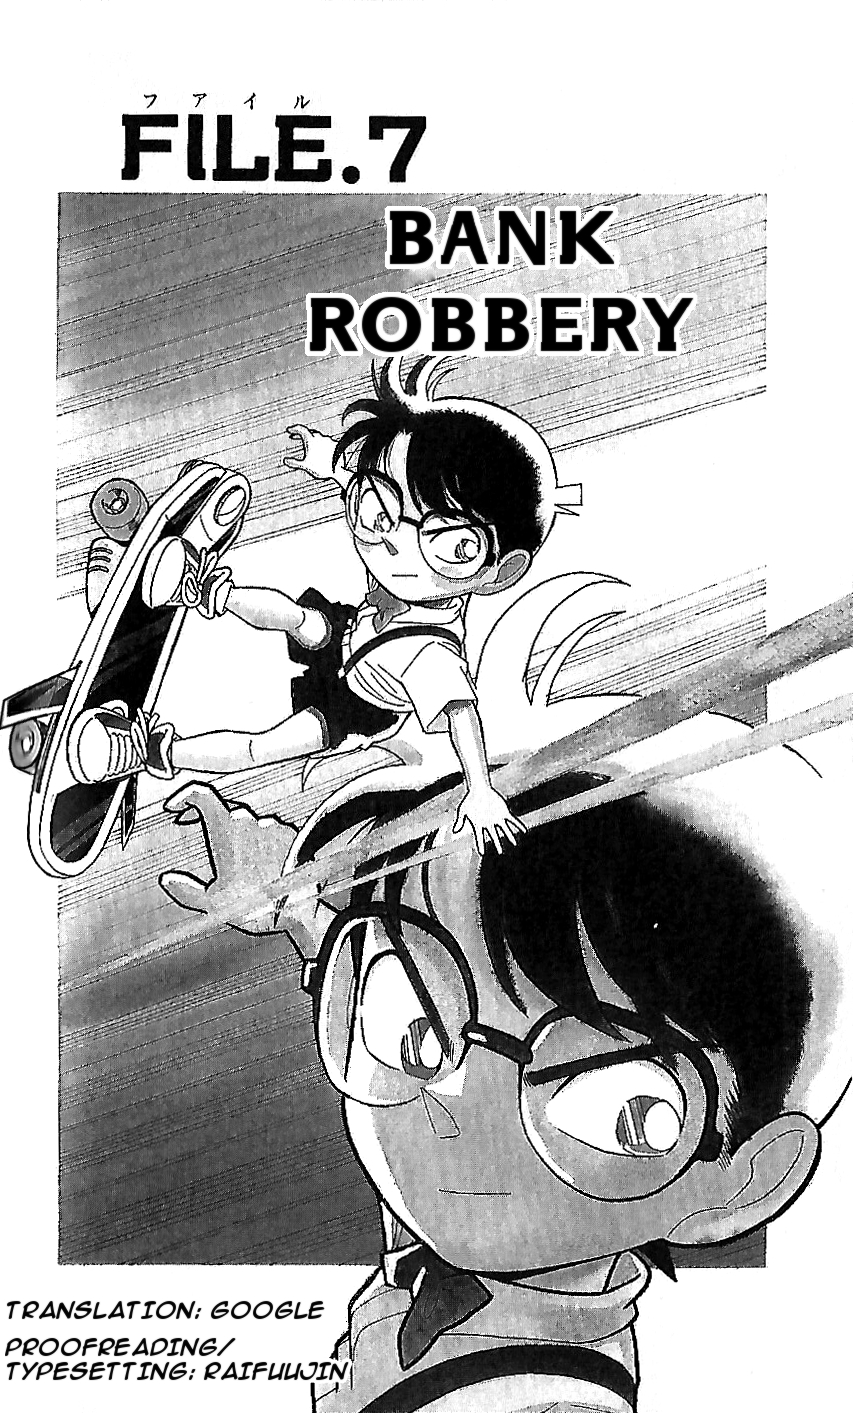 Detective Conan Special Vol. 1 Ch. 7 Bank Robbery